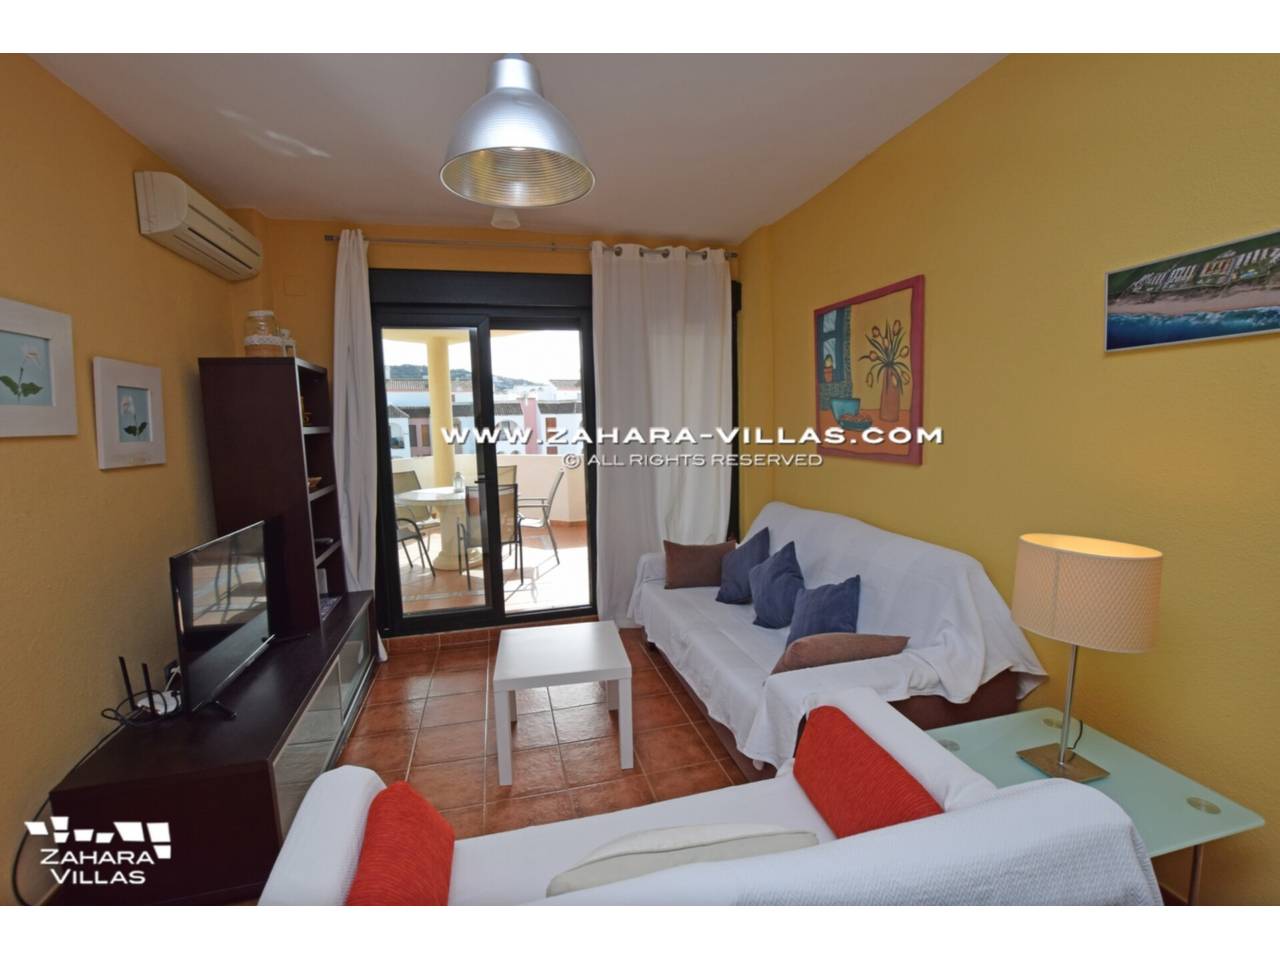 Imagen 3 de Penthouse apartment for sale in Zahara de los Atunes